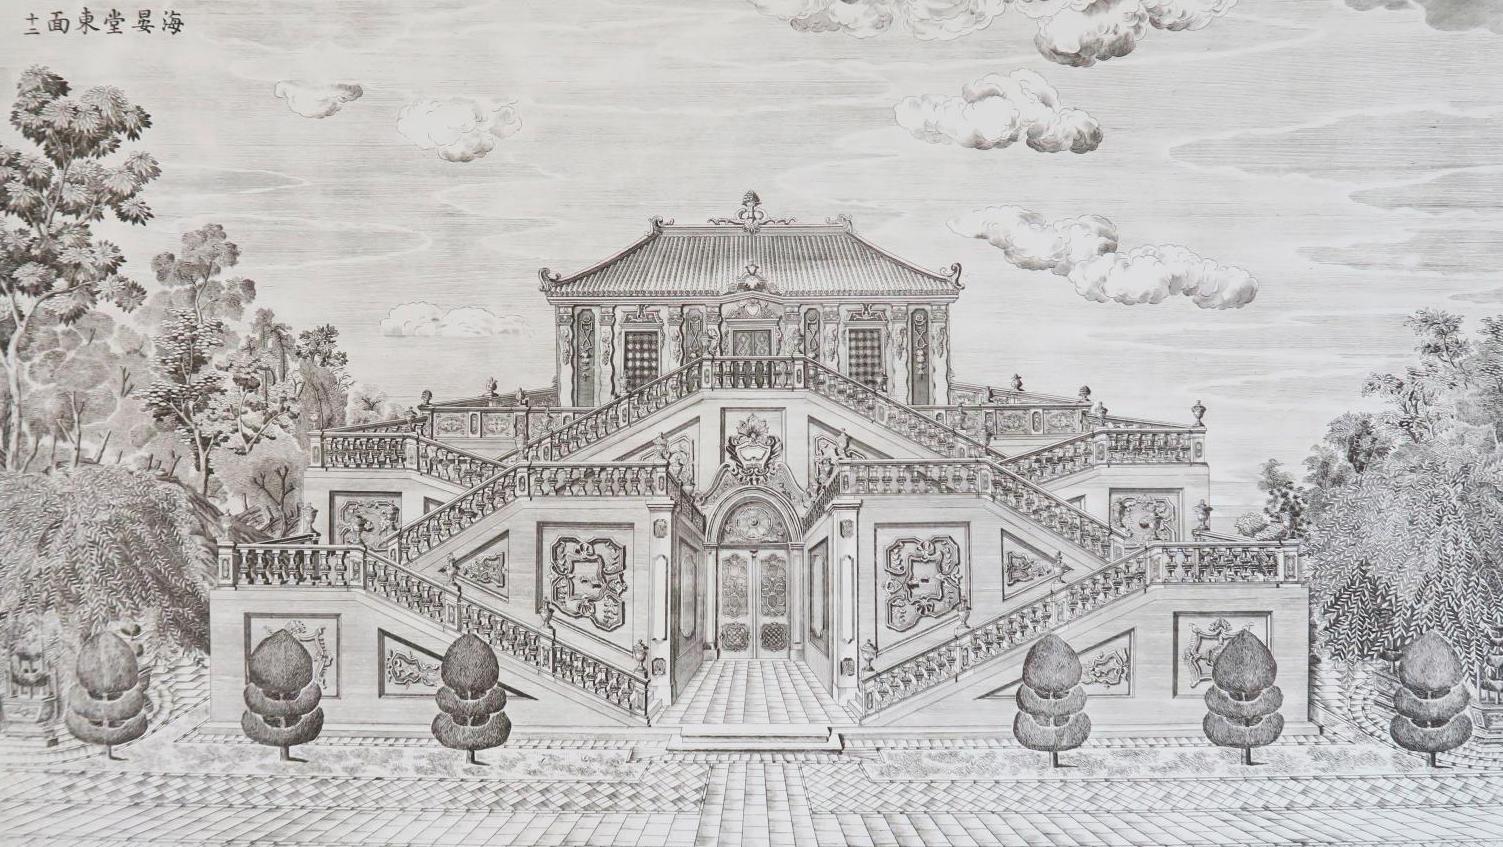 Palais pavillons et jardins construits par Giuseppe Castiglione dans le domaine impérial... Le palais d’Été de Pékin perdu et retrouvé